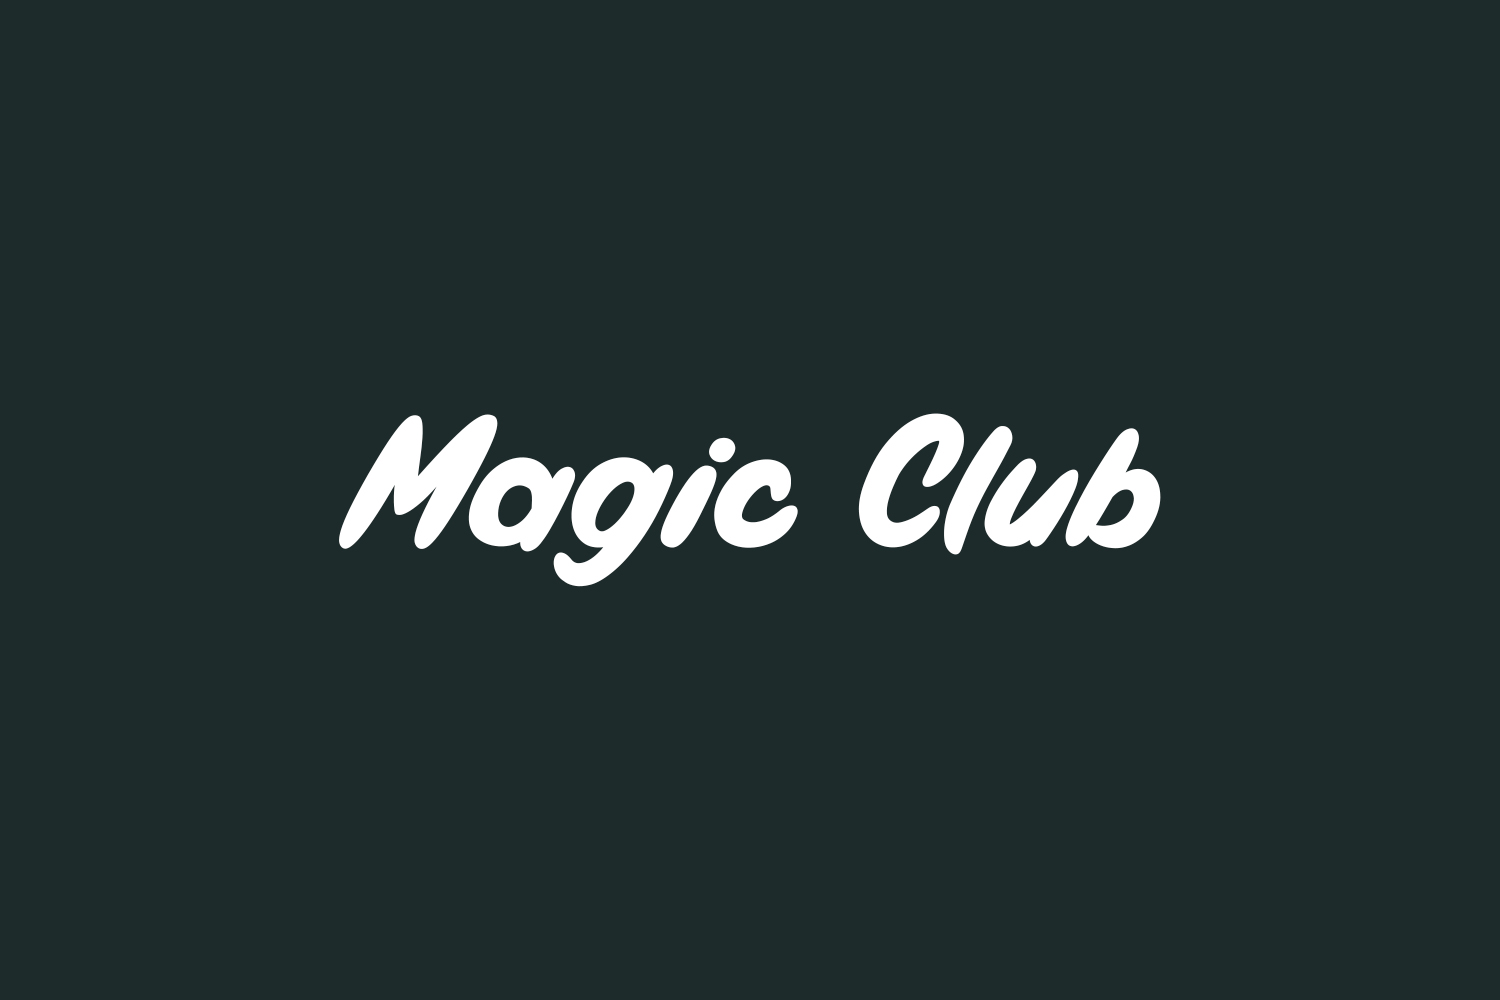 Magic Club Free Font